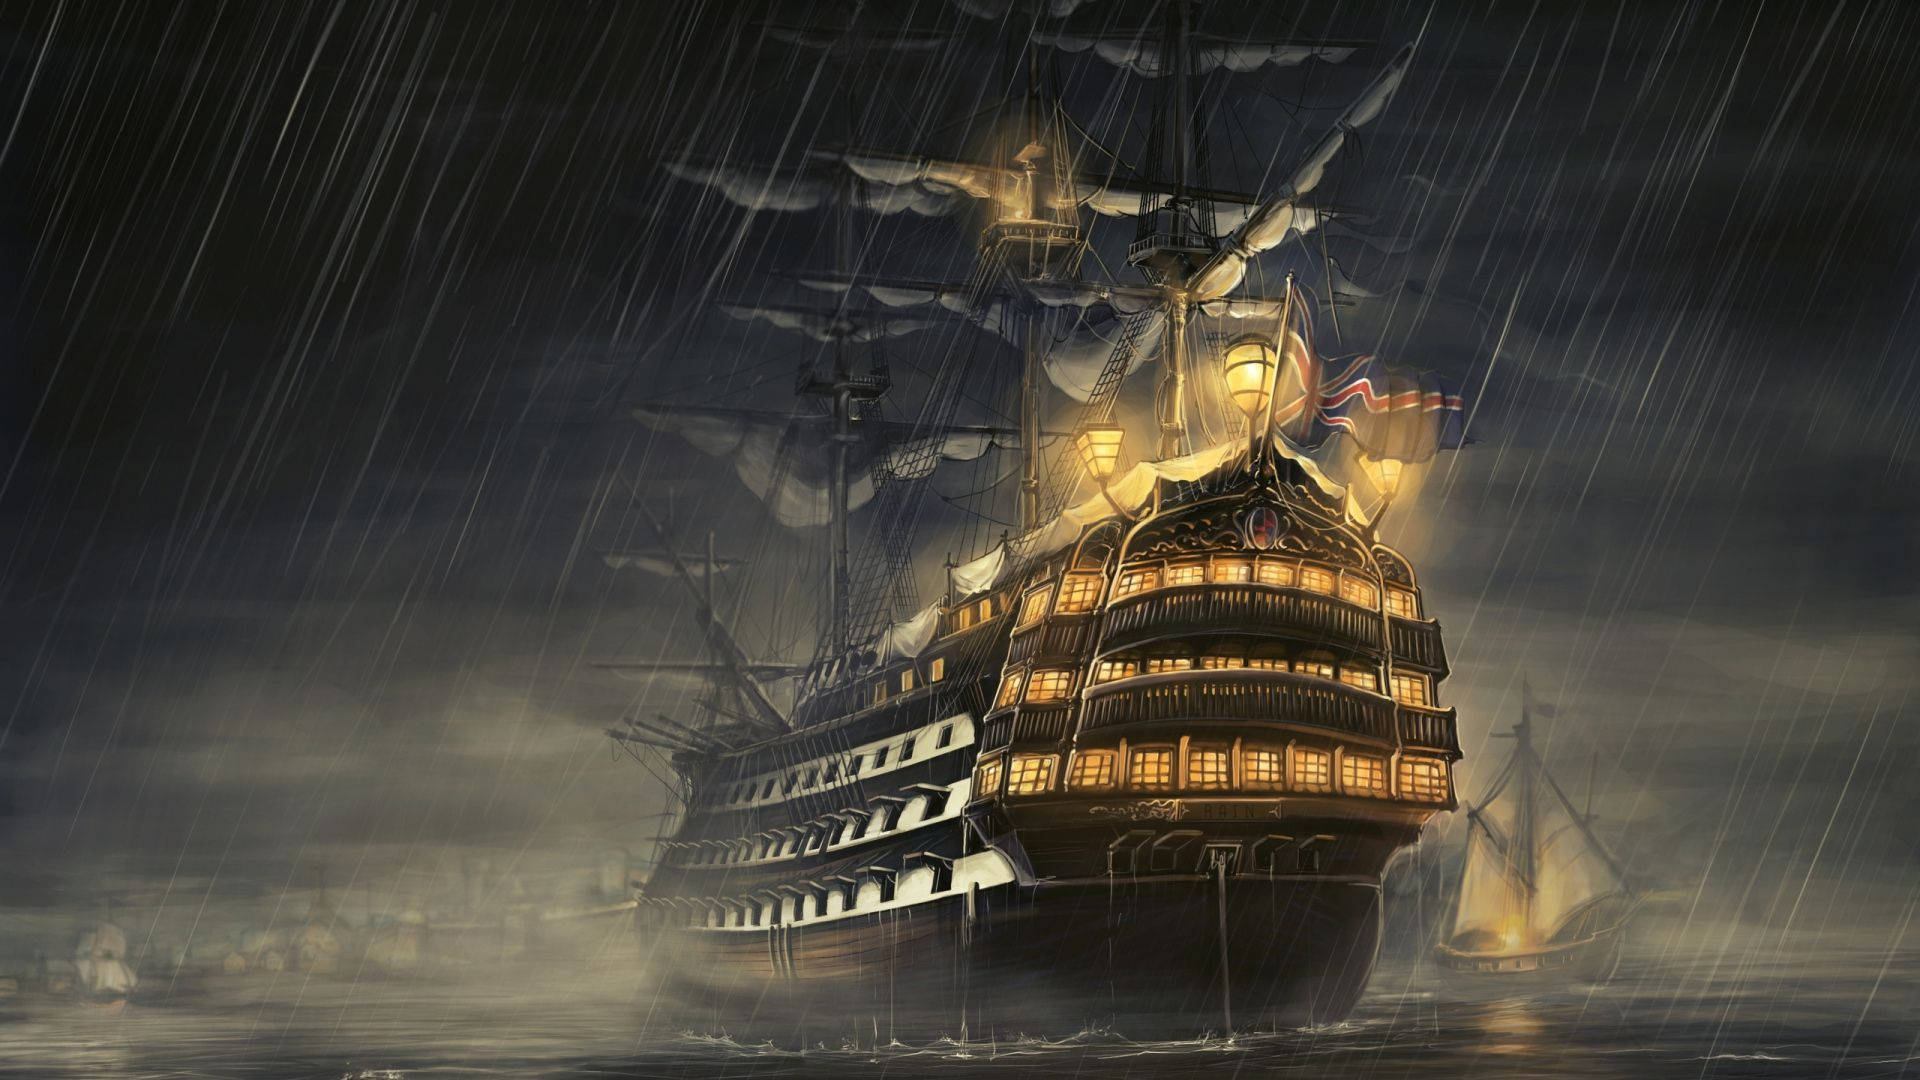 Animated Vintage Ship Background